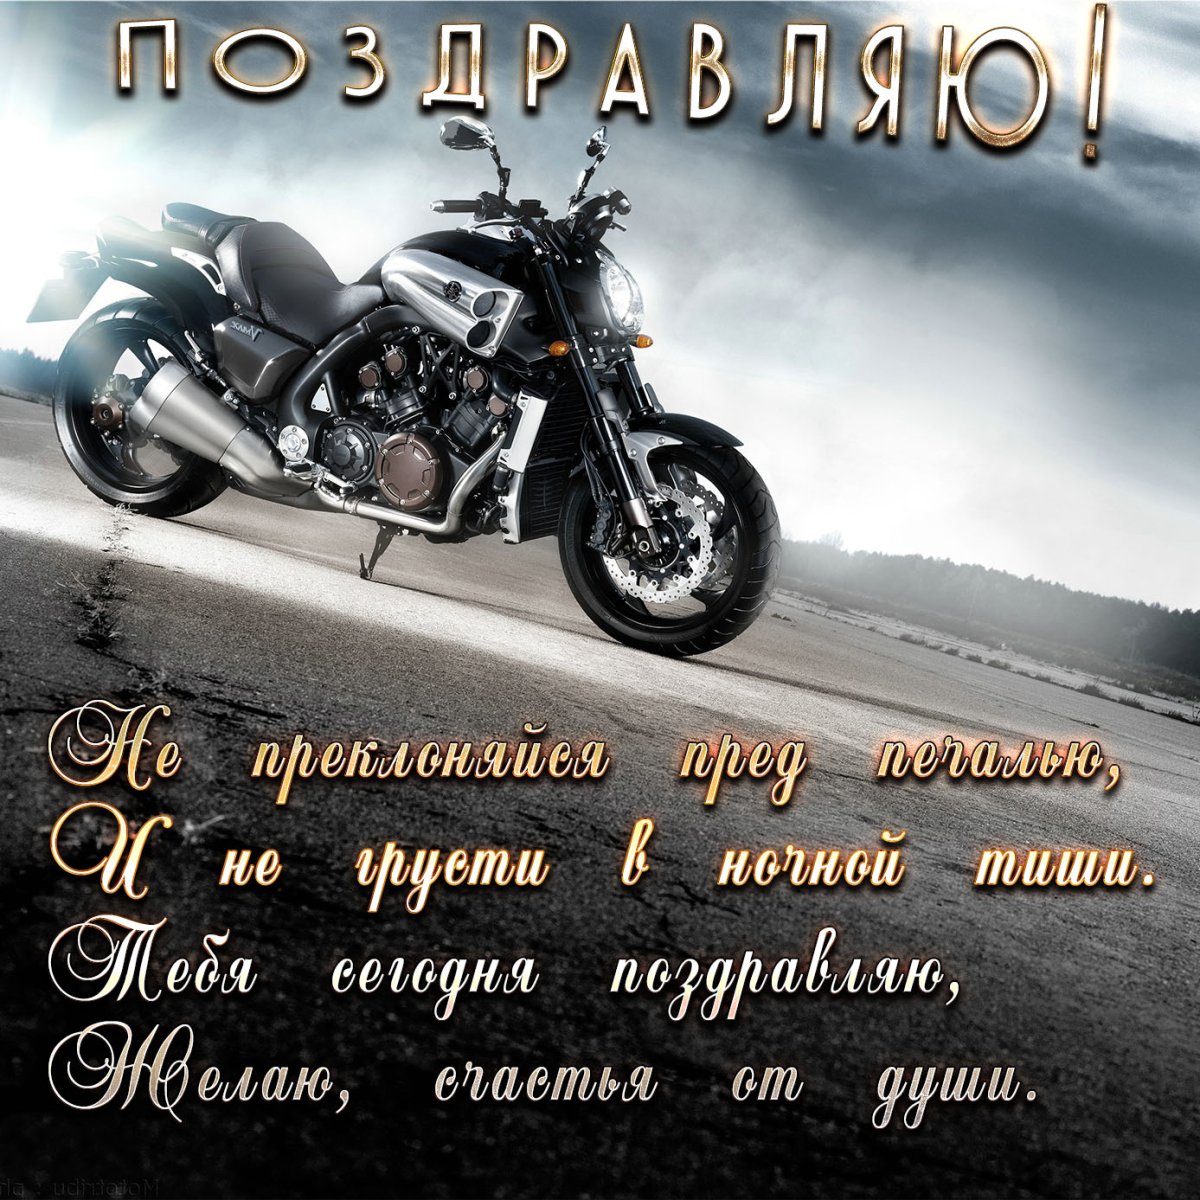 Мужская открытка для весёлого байкера))